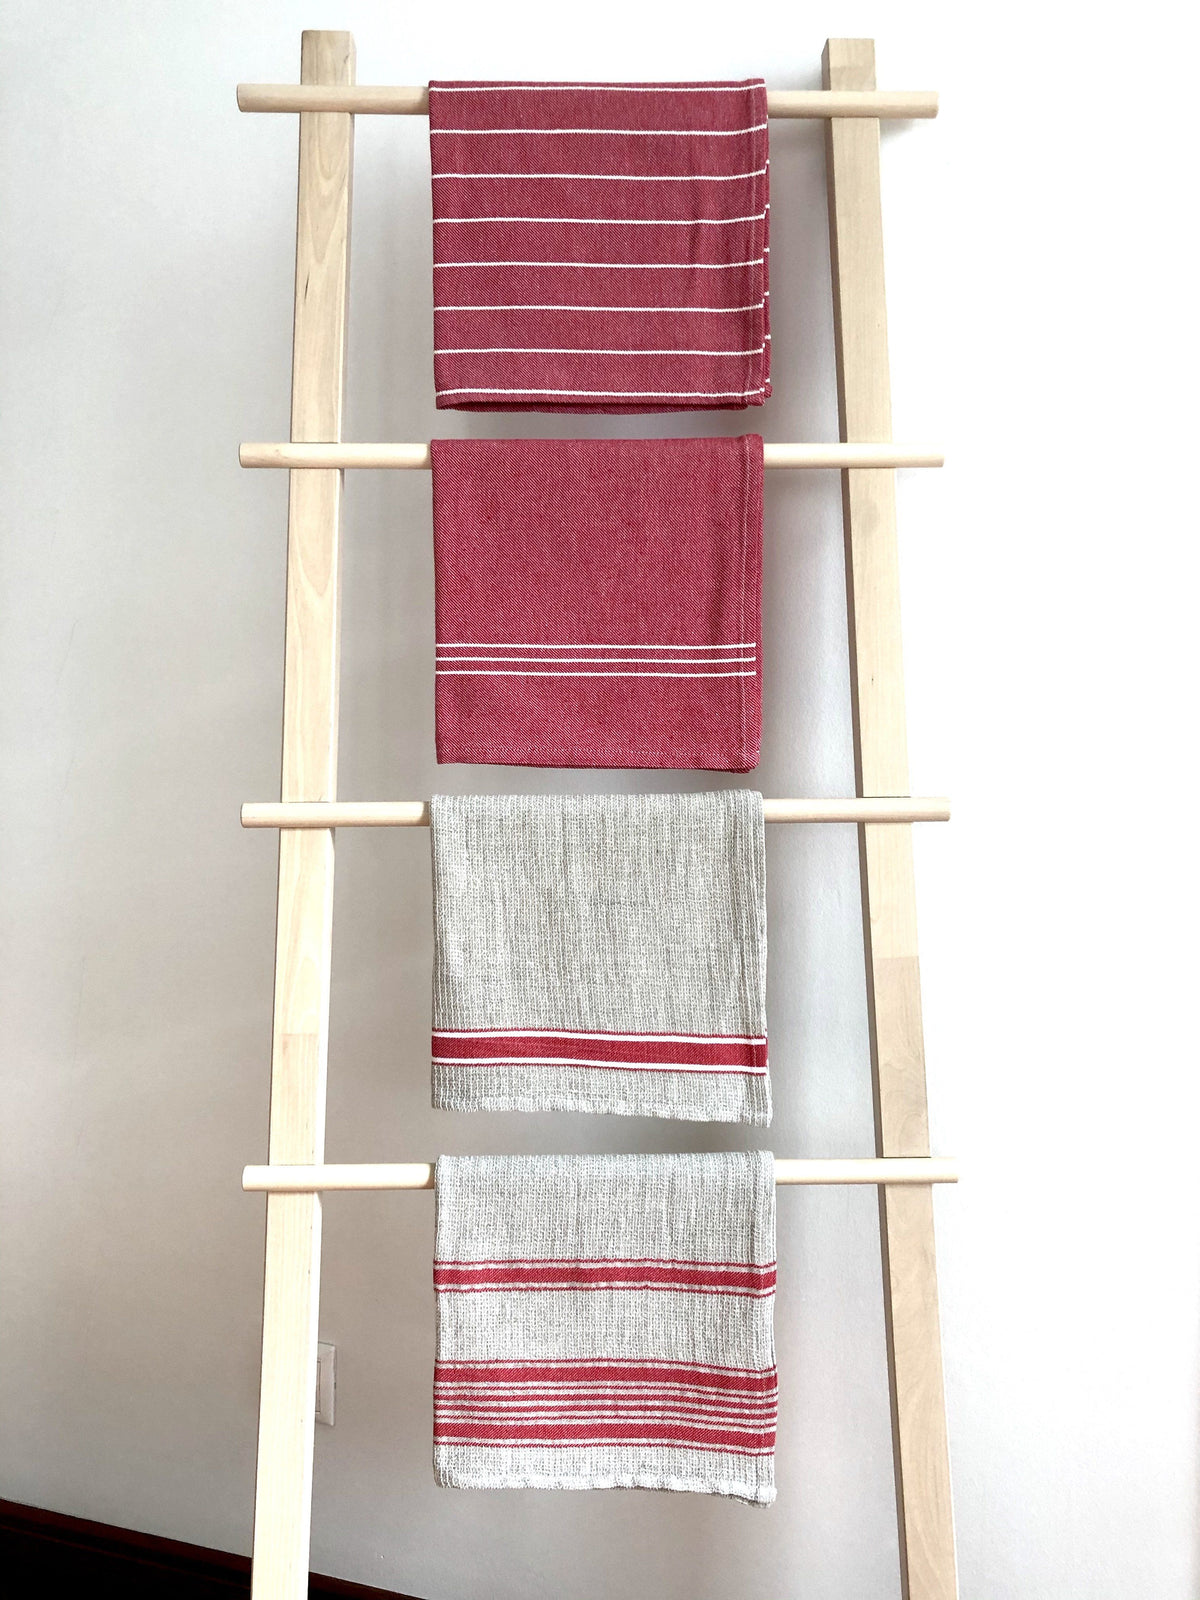 Rustic Napa Linen Kitchen Towel